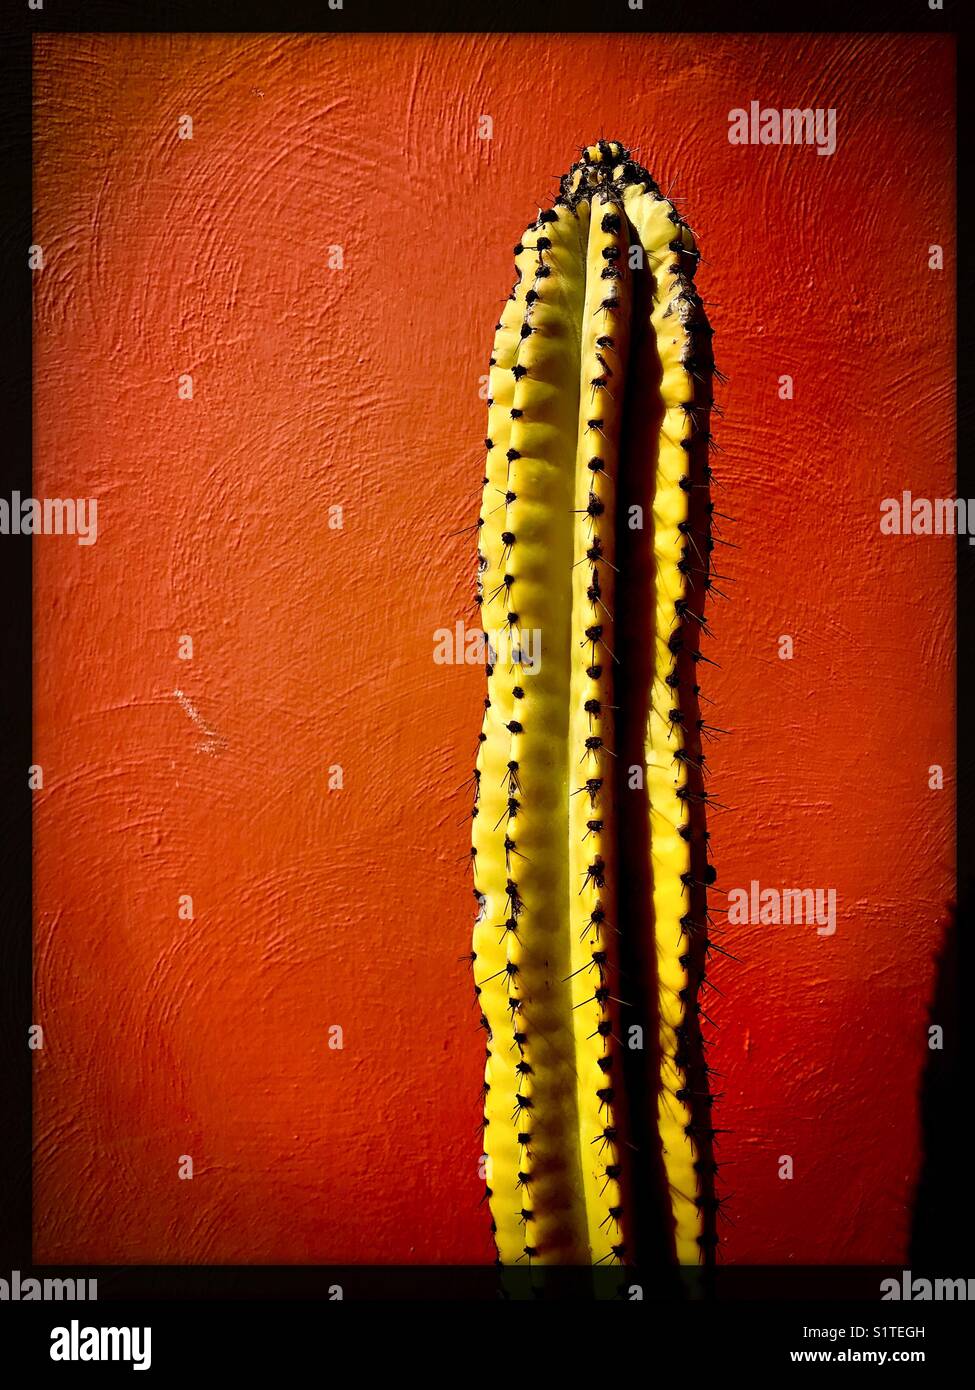 Uno alto, estrecho, puntiagudo cactus está contra una pared roja. Foto de stock